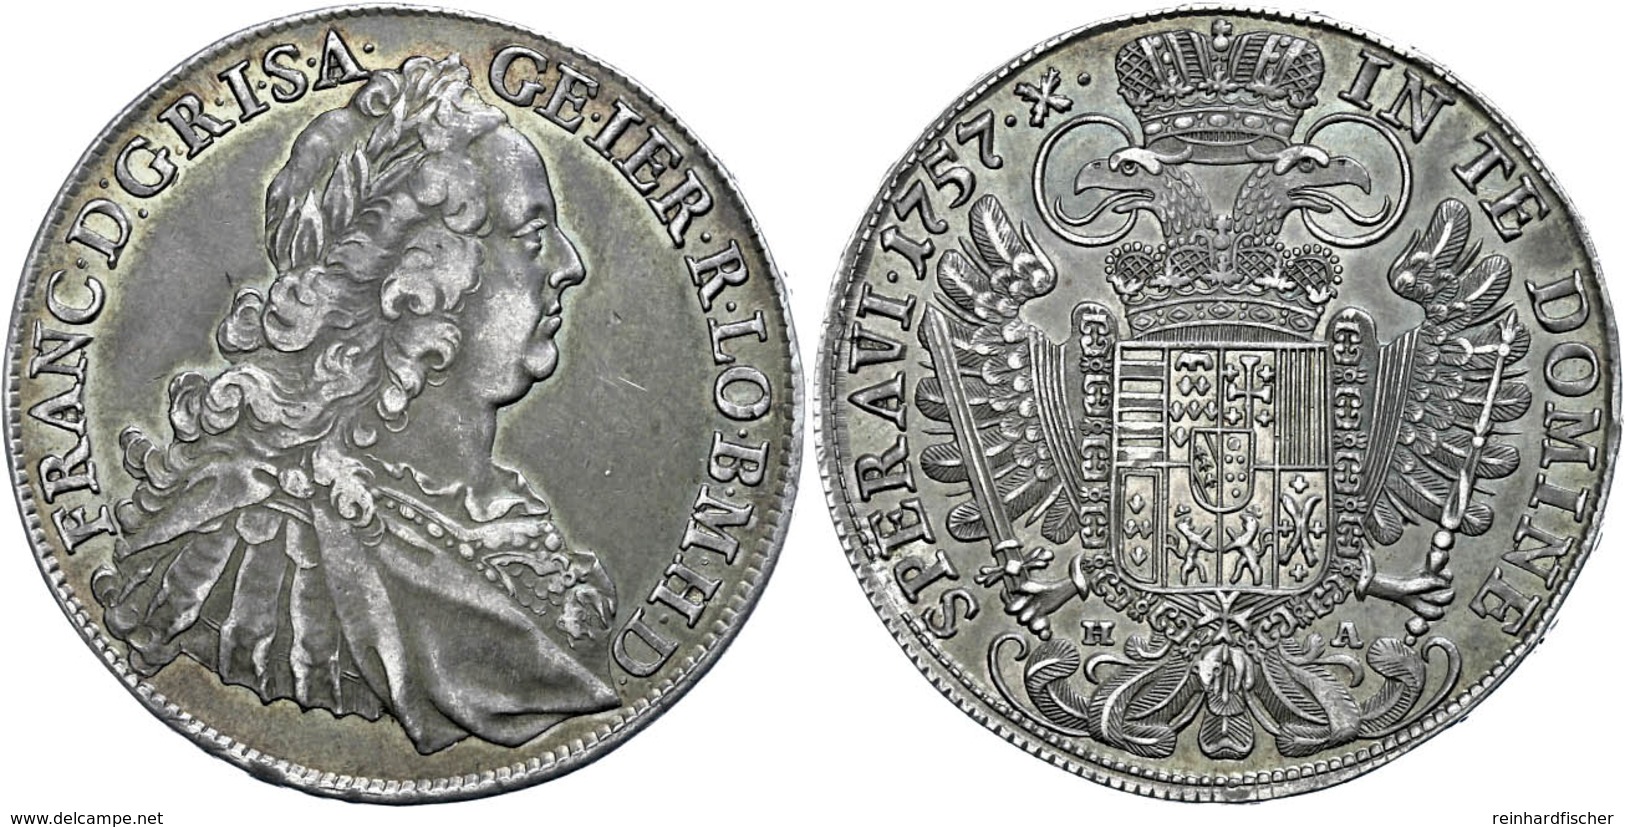 Taler, 1757, Franz I. Stefan, HA, Hall, Dav. 1155, Schöne Patina, Vz+. - Oesterreich